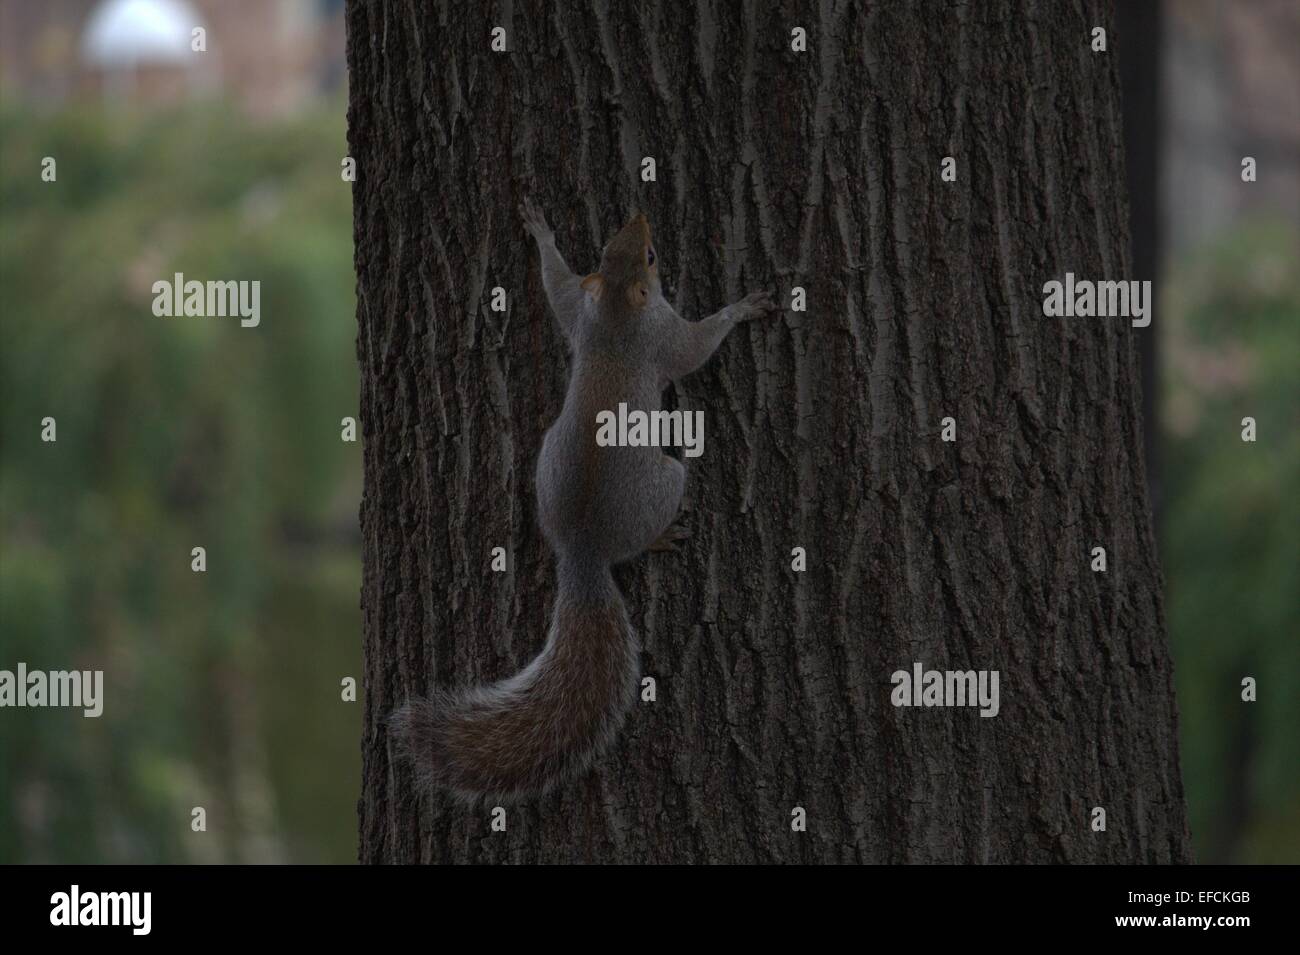 Squirrel climbing on tree trunk (Scoiattolo che si arrampica sul tronco) Stock Photo